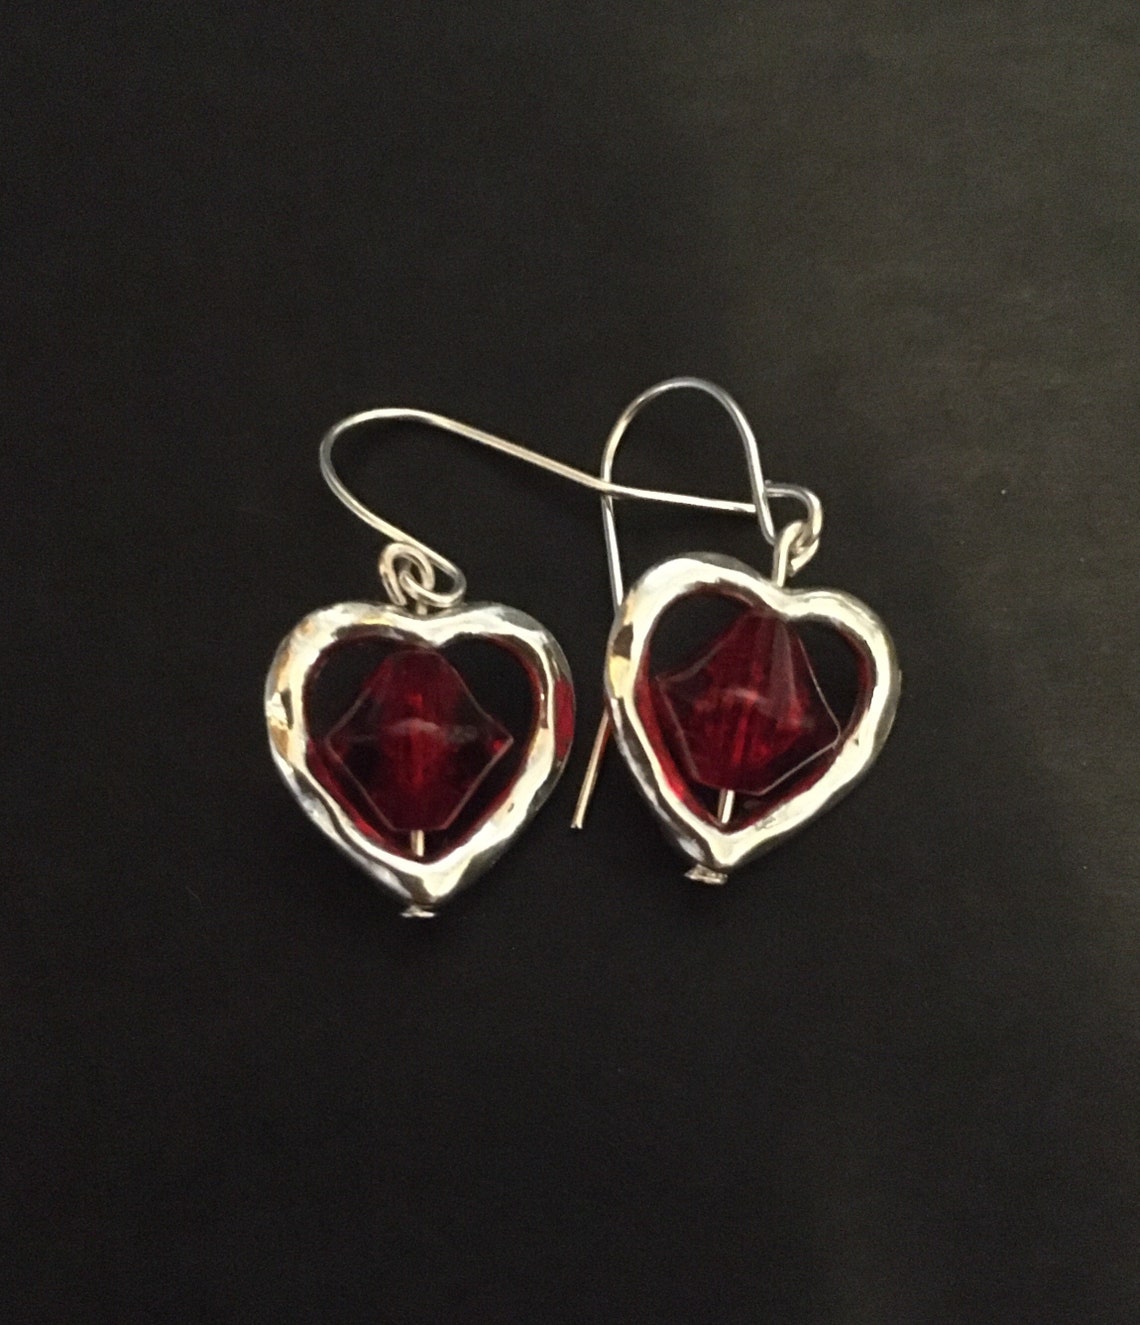 Ruby heart earrings heart earrings heart dangle earrings | Etsy